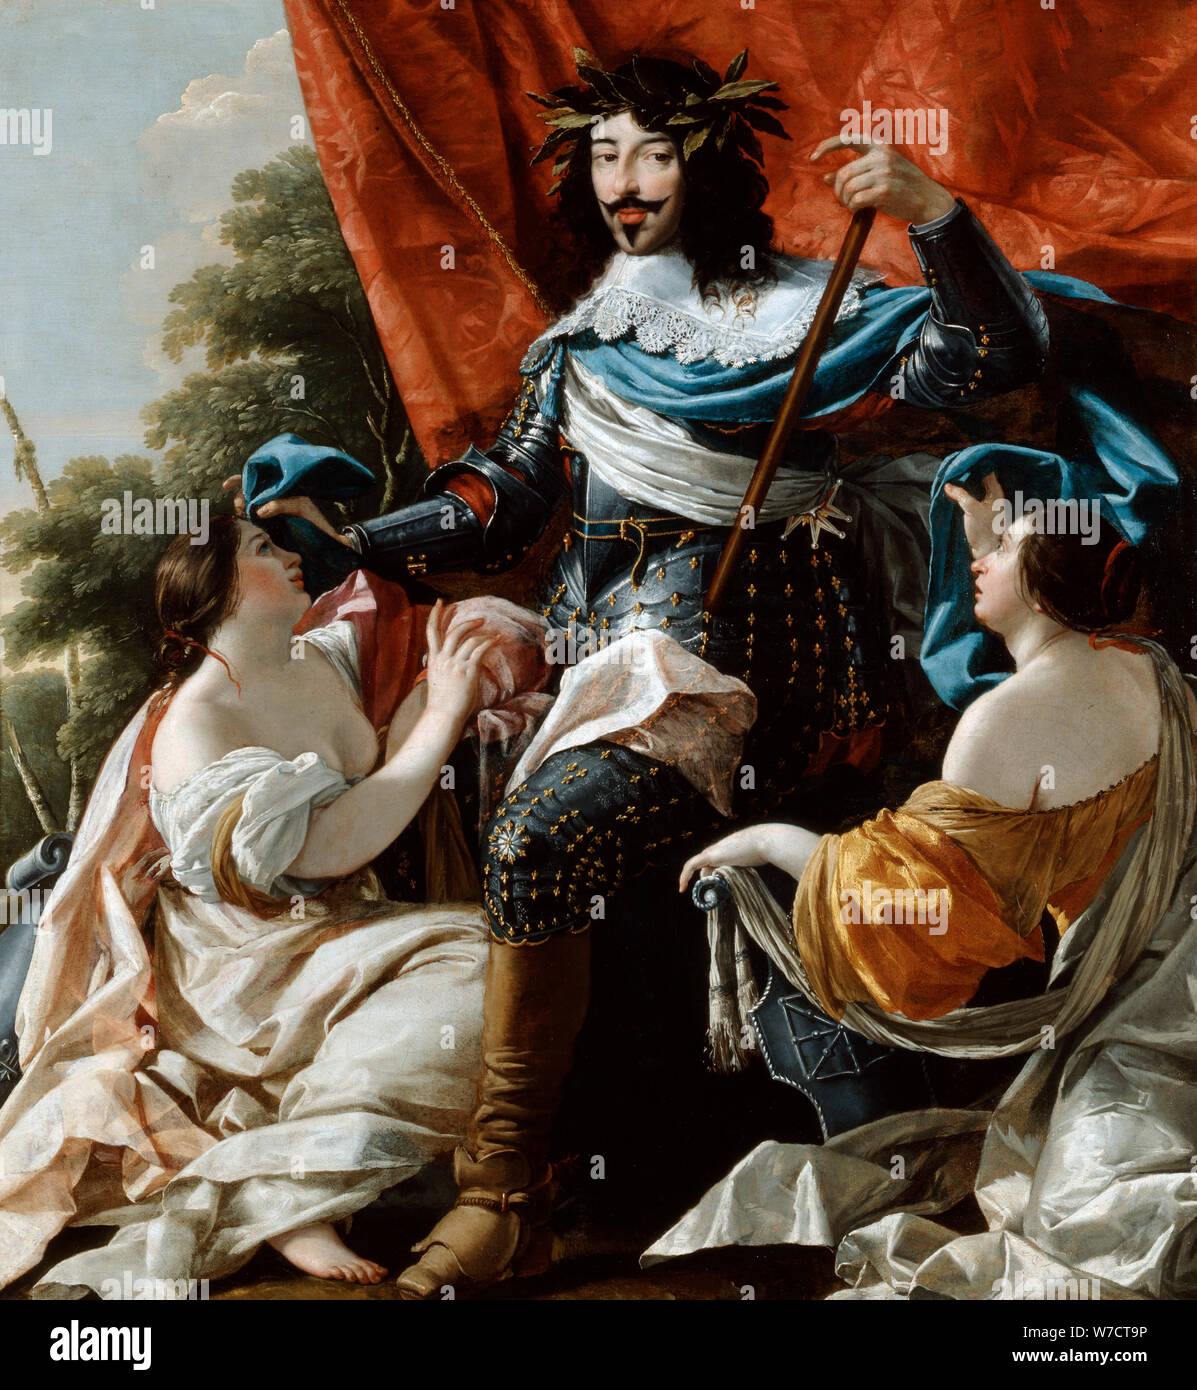 'Louis XIII e XVII secolo. Artista: Simon Vouet Foto Stock